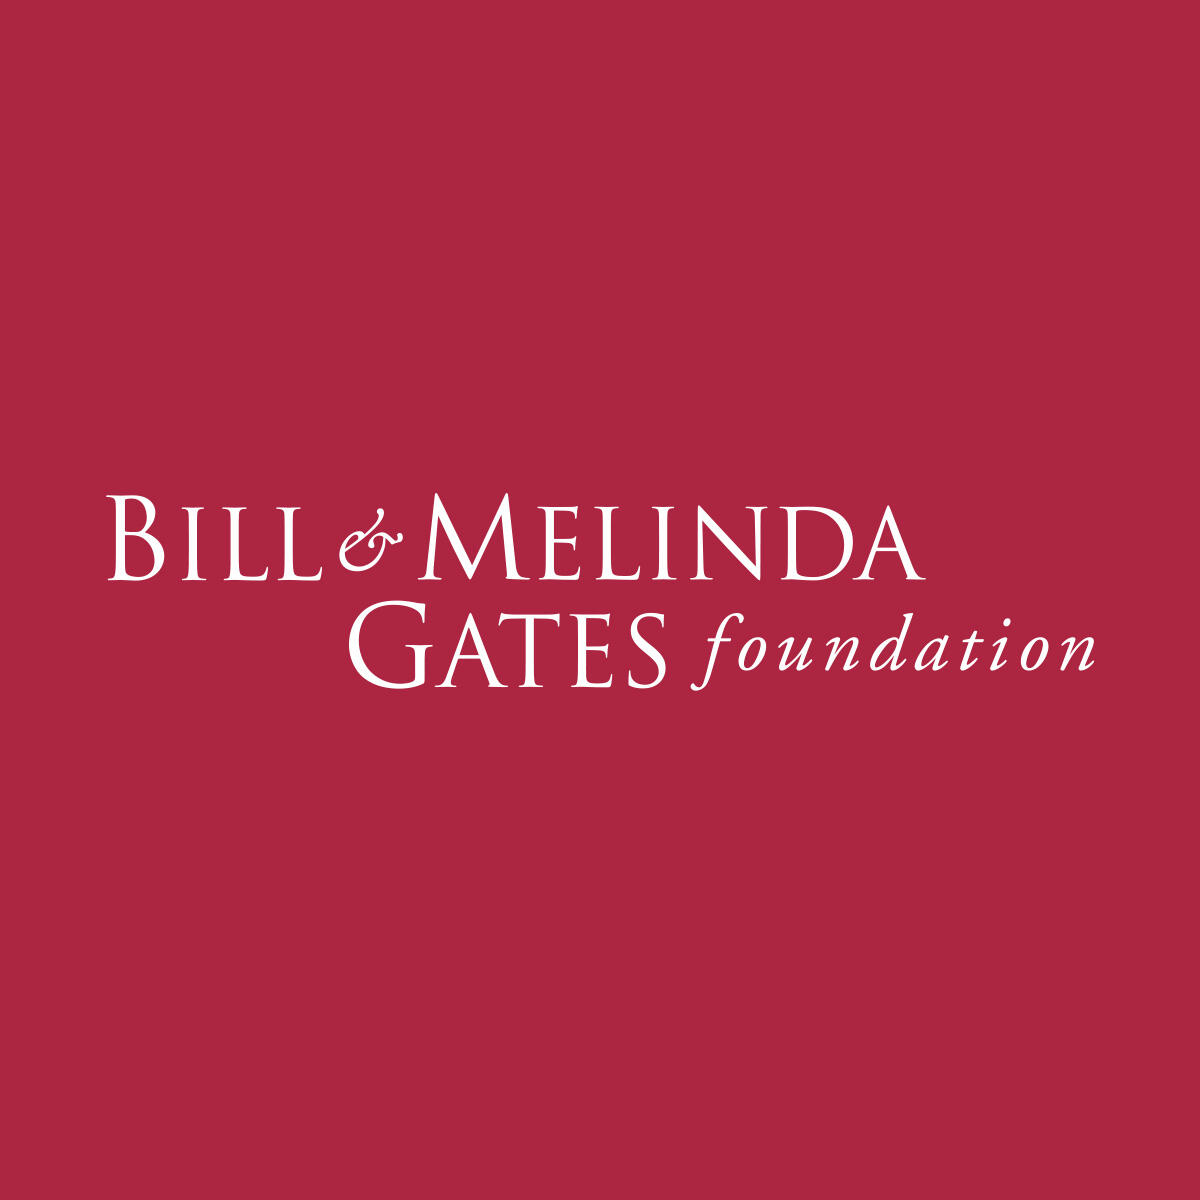 Bill & Melinda Foundation